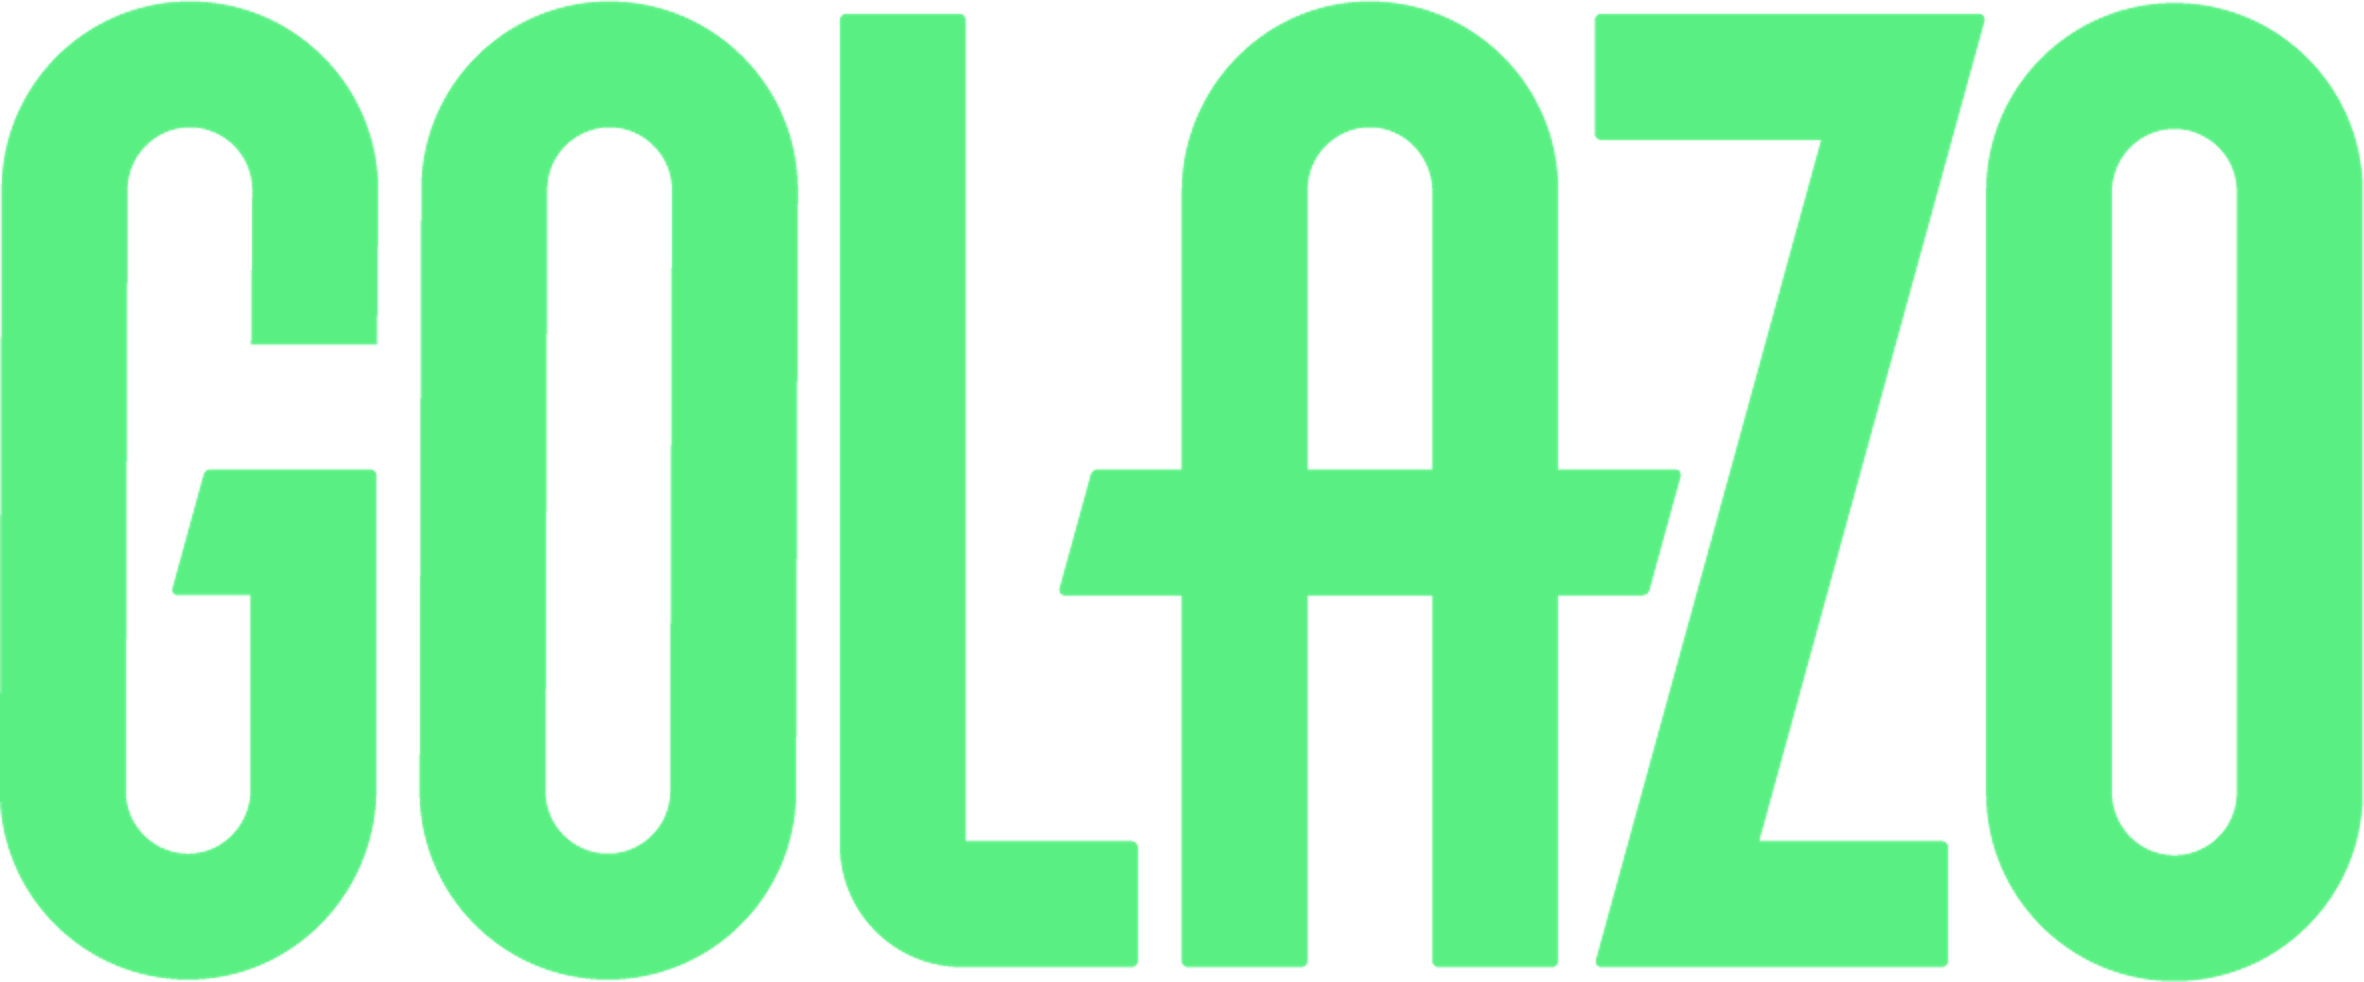 Golazo logo